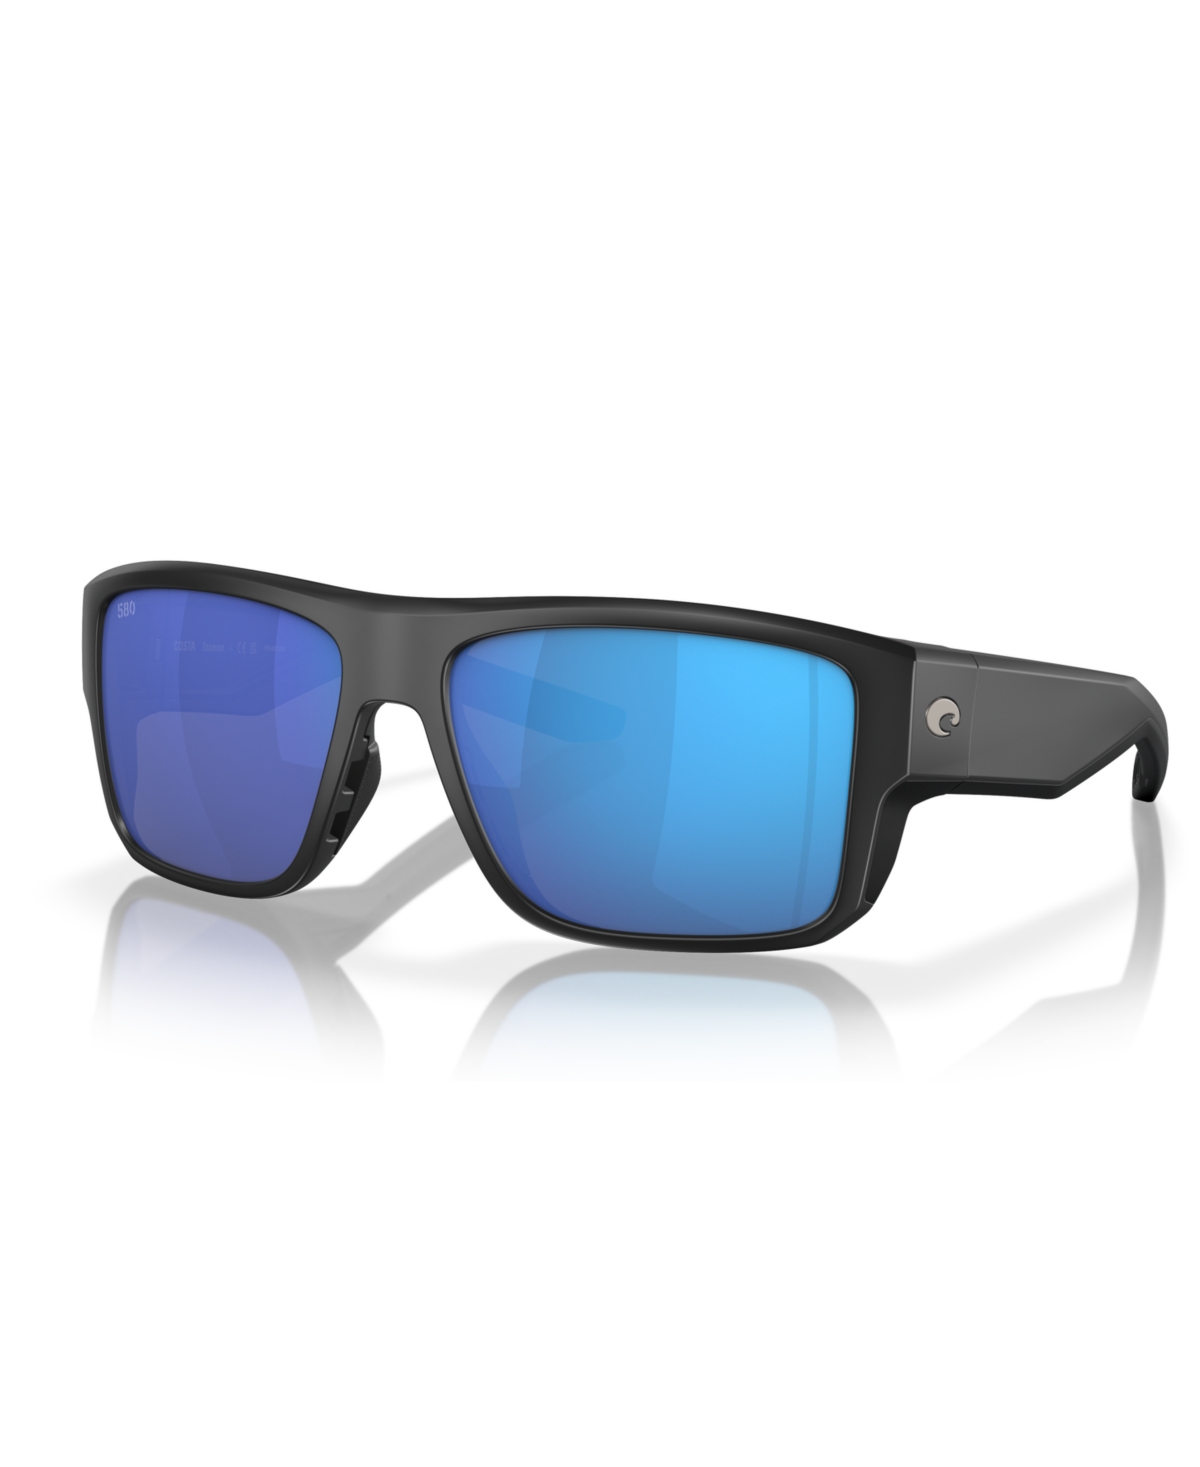 Men's Polarized Sunglasses, Taxman 6S9116 - Matte Black, Gold